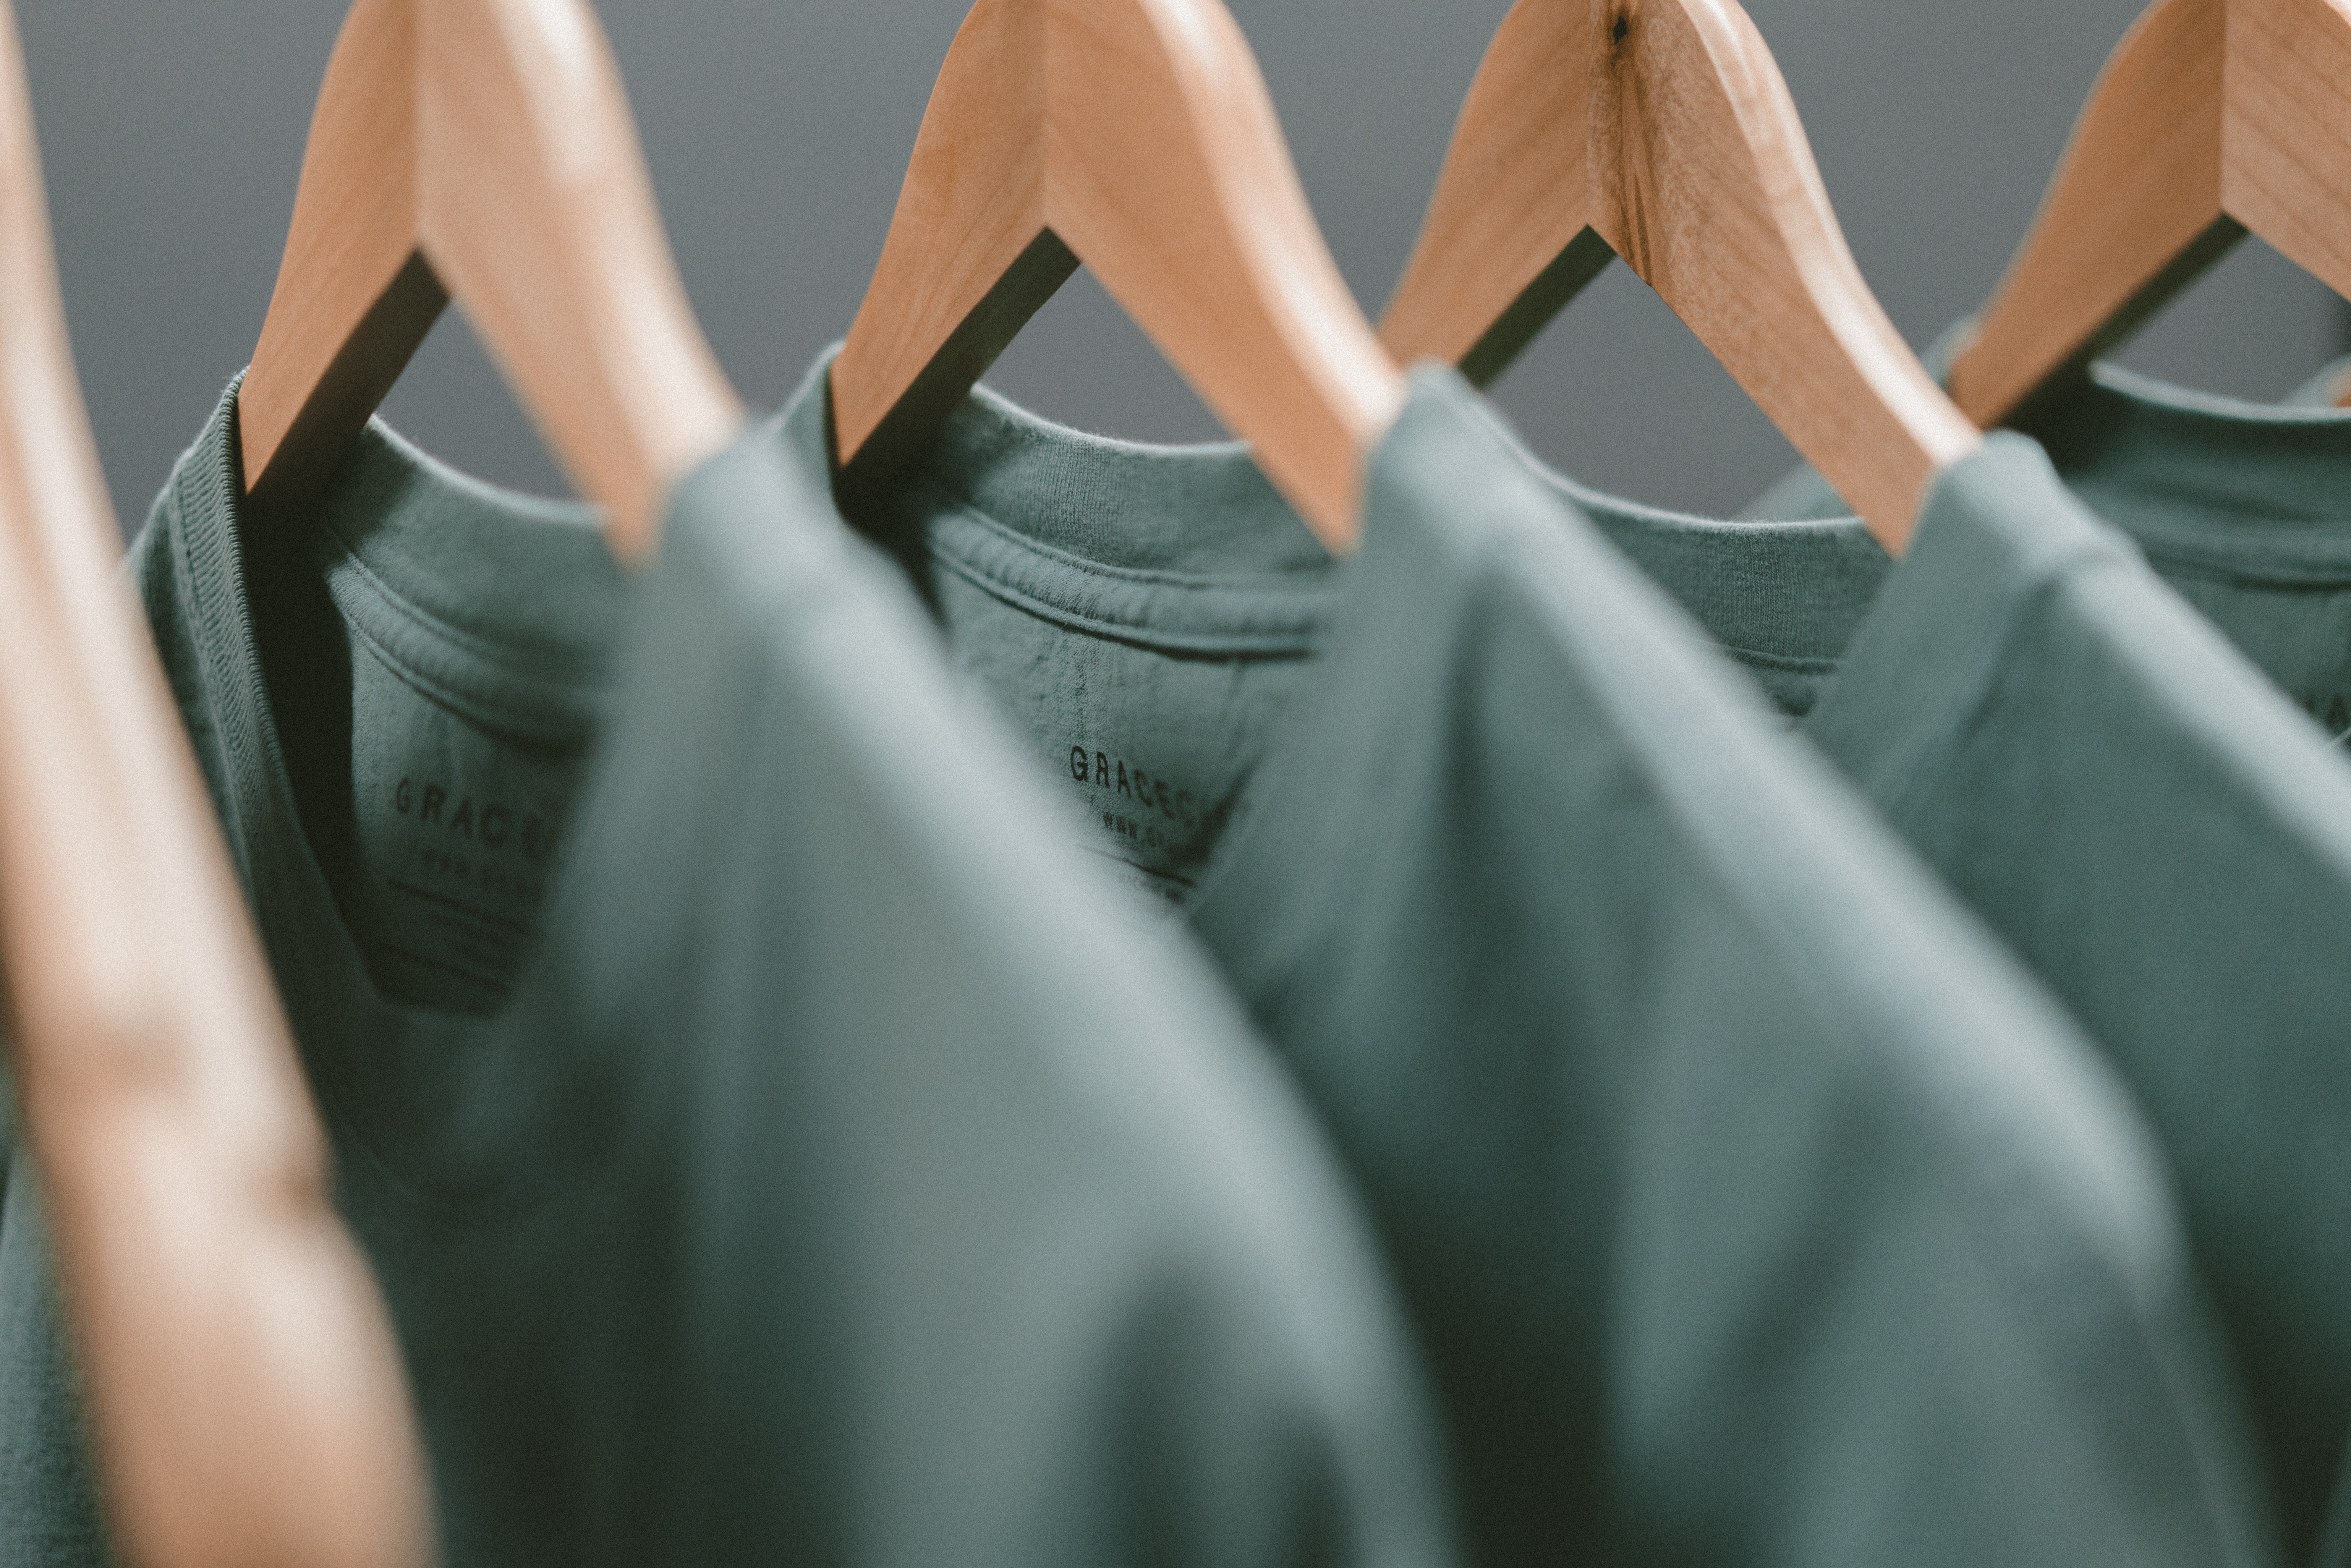 Abbigliamento personalizzato: le magliette si confermano un evergreen per la promozione aziendale